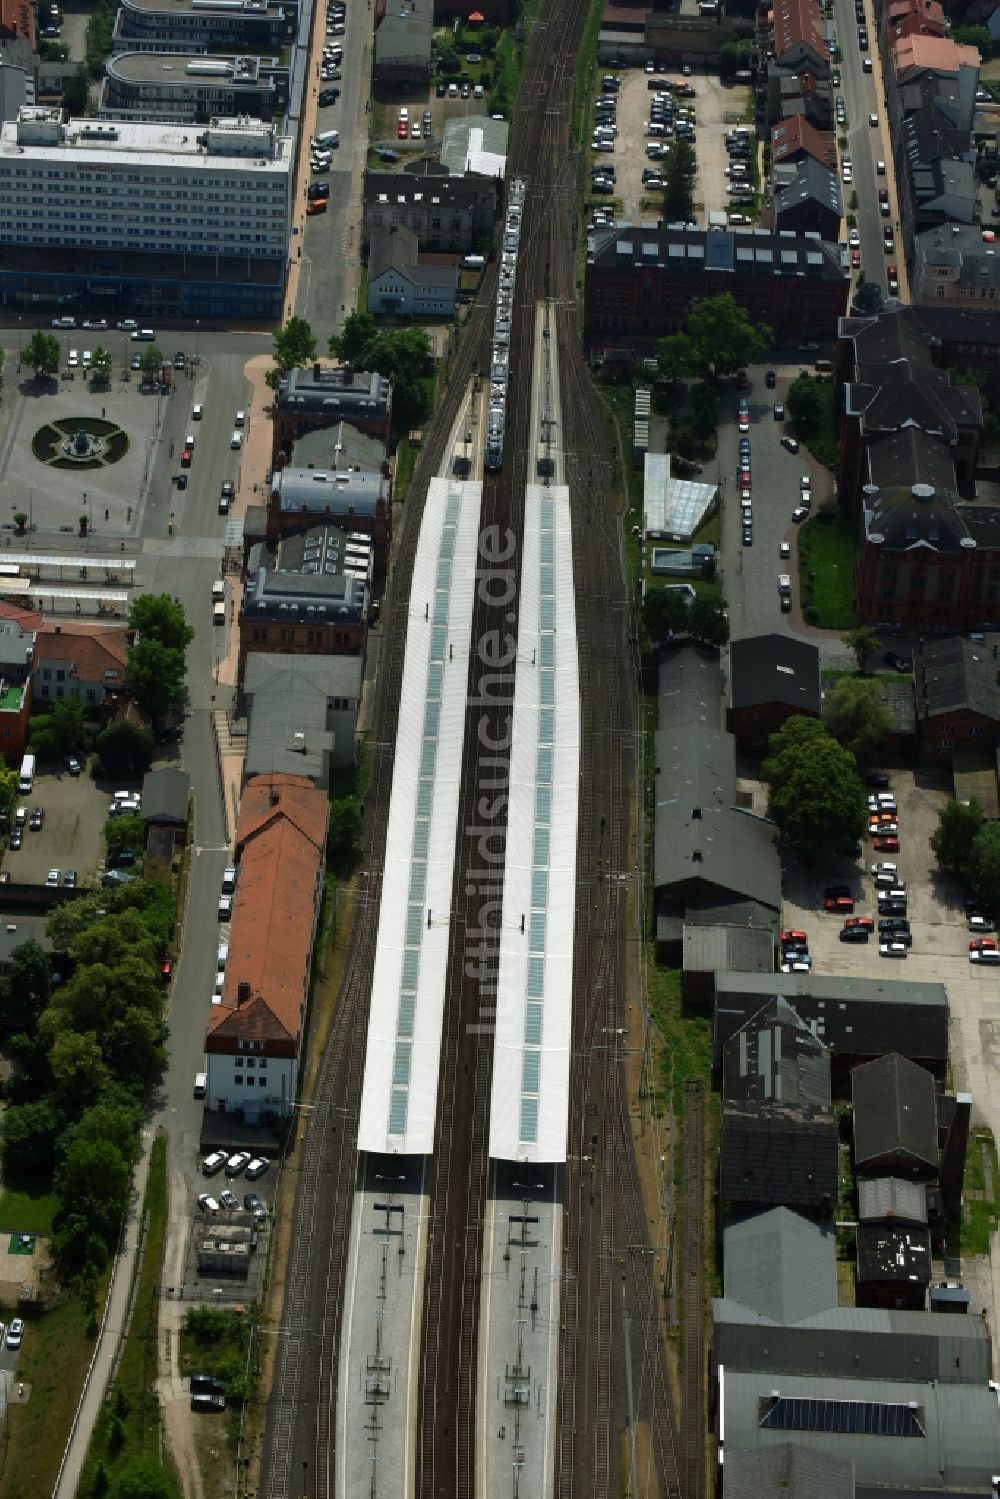 Schwerin von oben - Hauptbahnhof der Deutschen Bahn in Schwerin im Bundesland Mecklenburg-Vorpommern, Deutschland